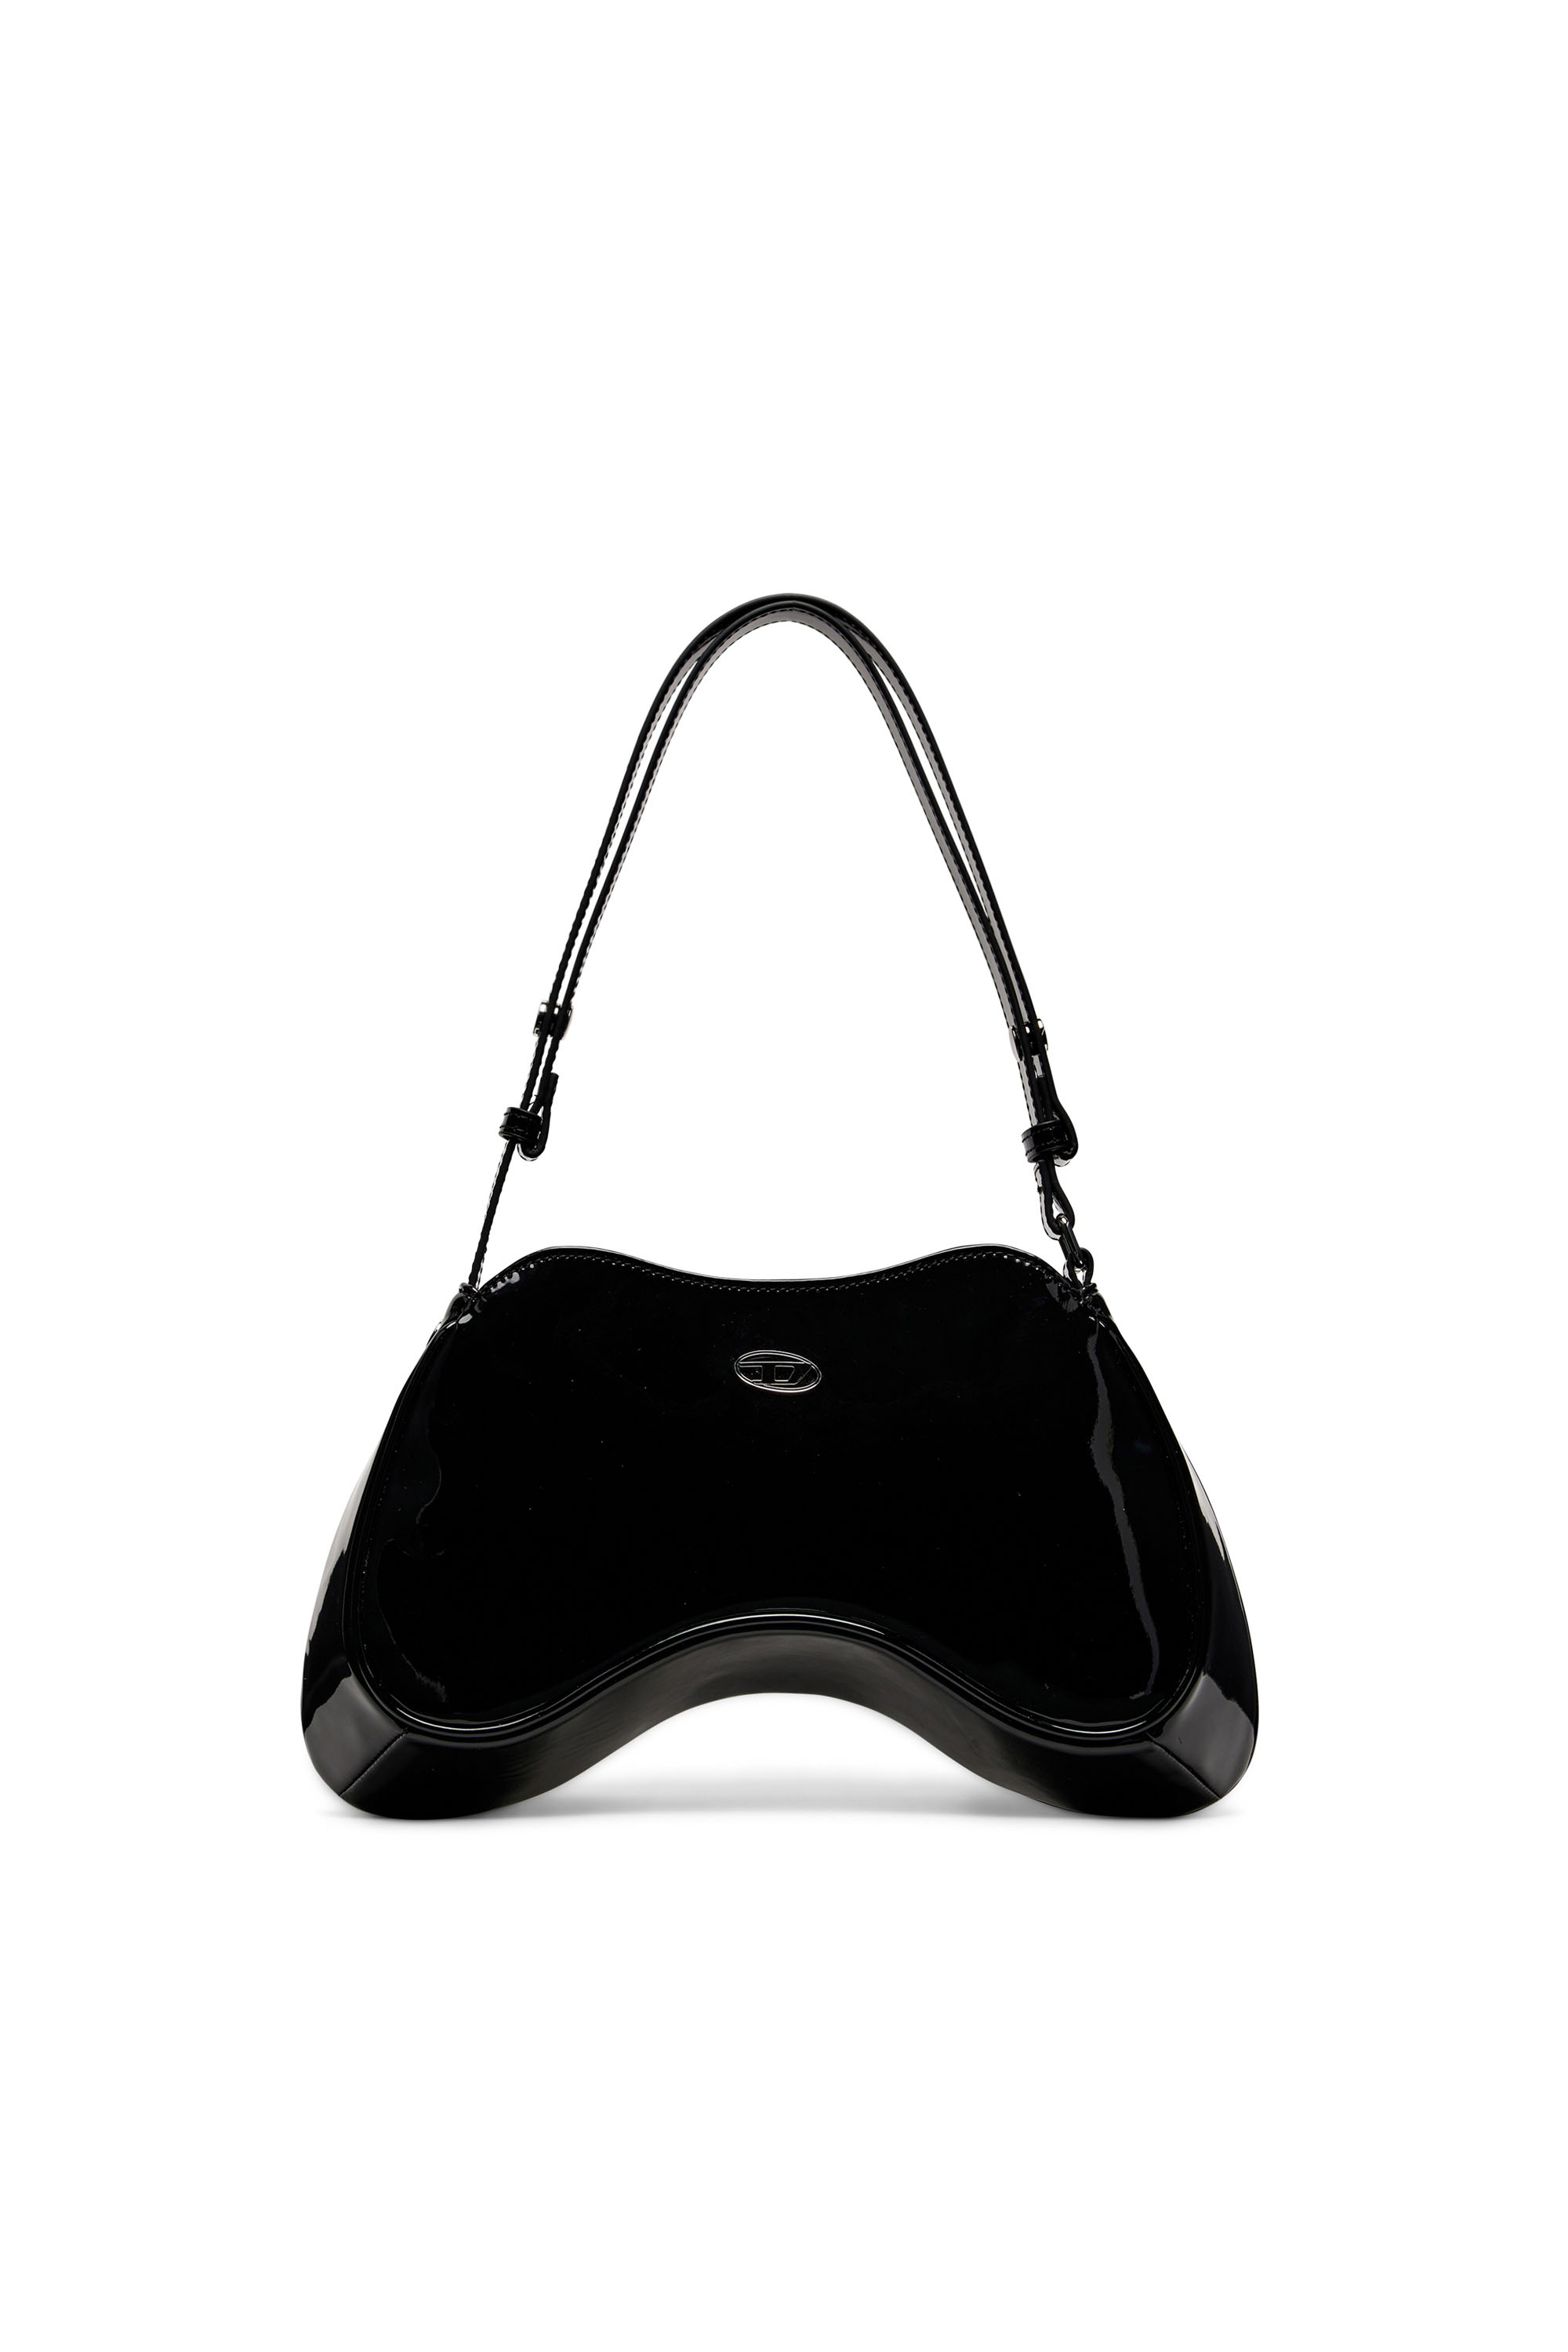 Diesel - PLAY SHOULDER, Woman Play-Glossy shoulder bag in Black - Image 1